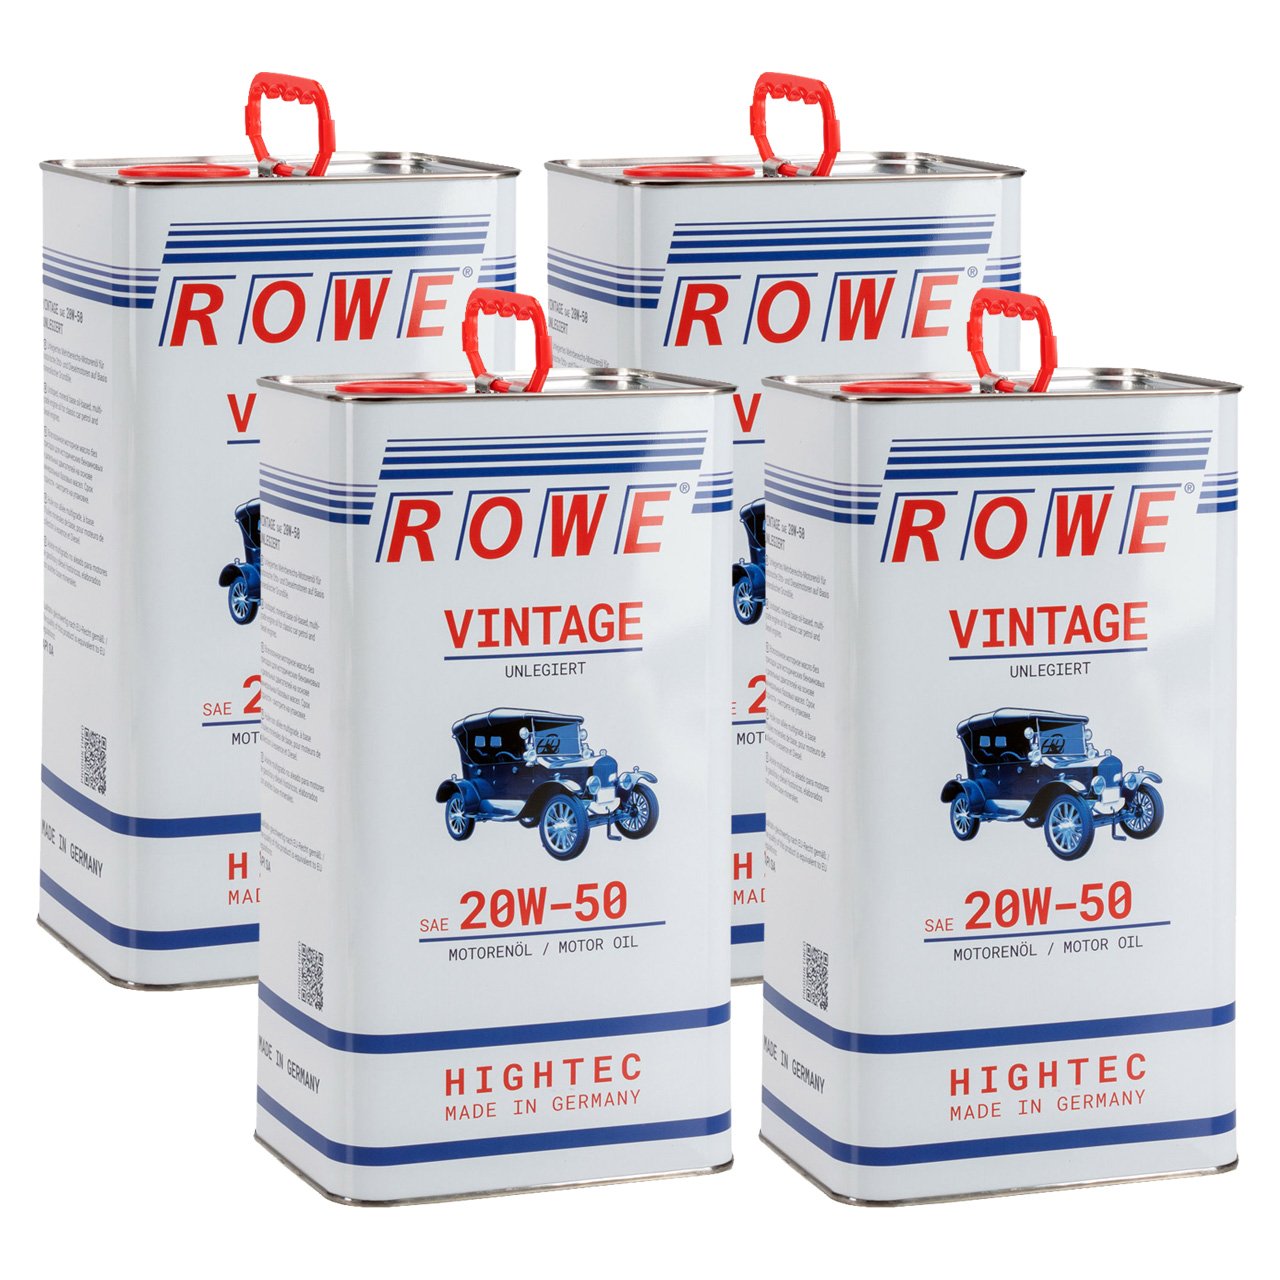 20 Liter ROWE Motoröl Öl VINTAGE Unlegiert SAE 20W50 Oldtimer Mehrbereichs-Öl